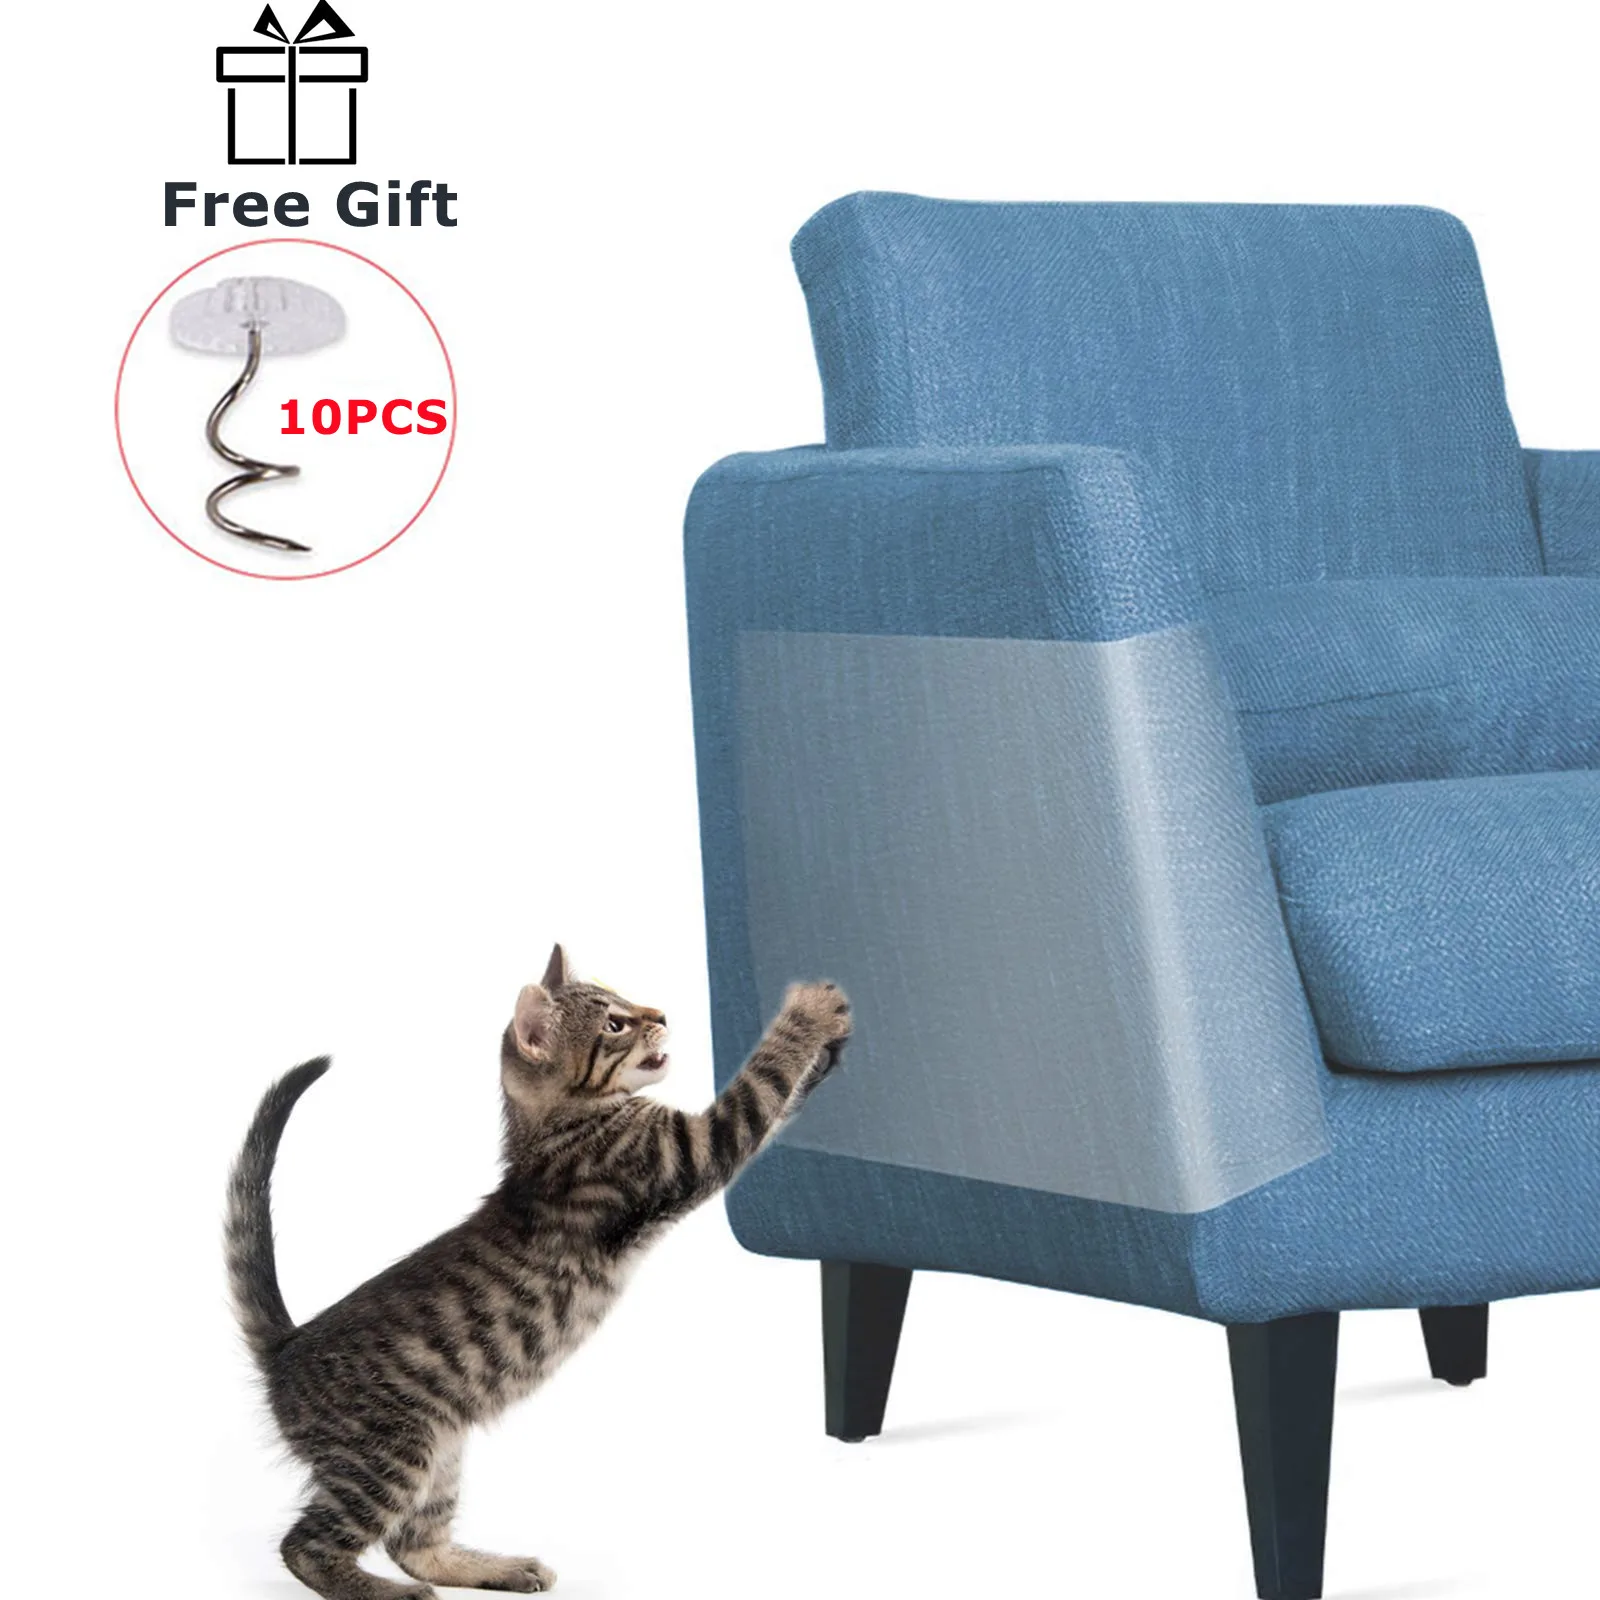 

Anti Cat Scratcher Guard Cat Scratching Post Furniture Couch Sofa Protector Cat scraper Deterrent Tape Paw Pads Carpet Protector